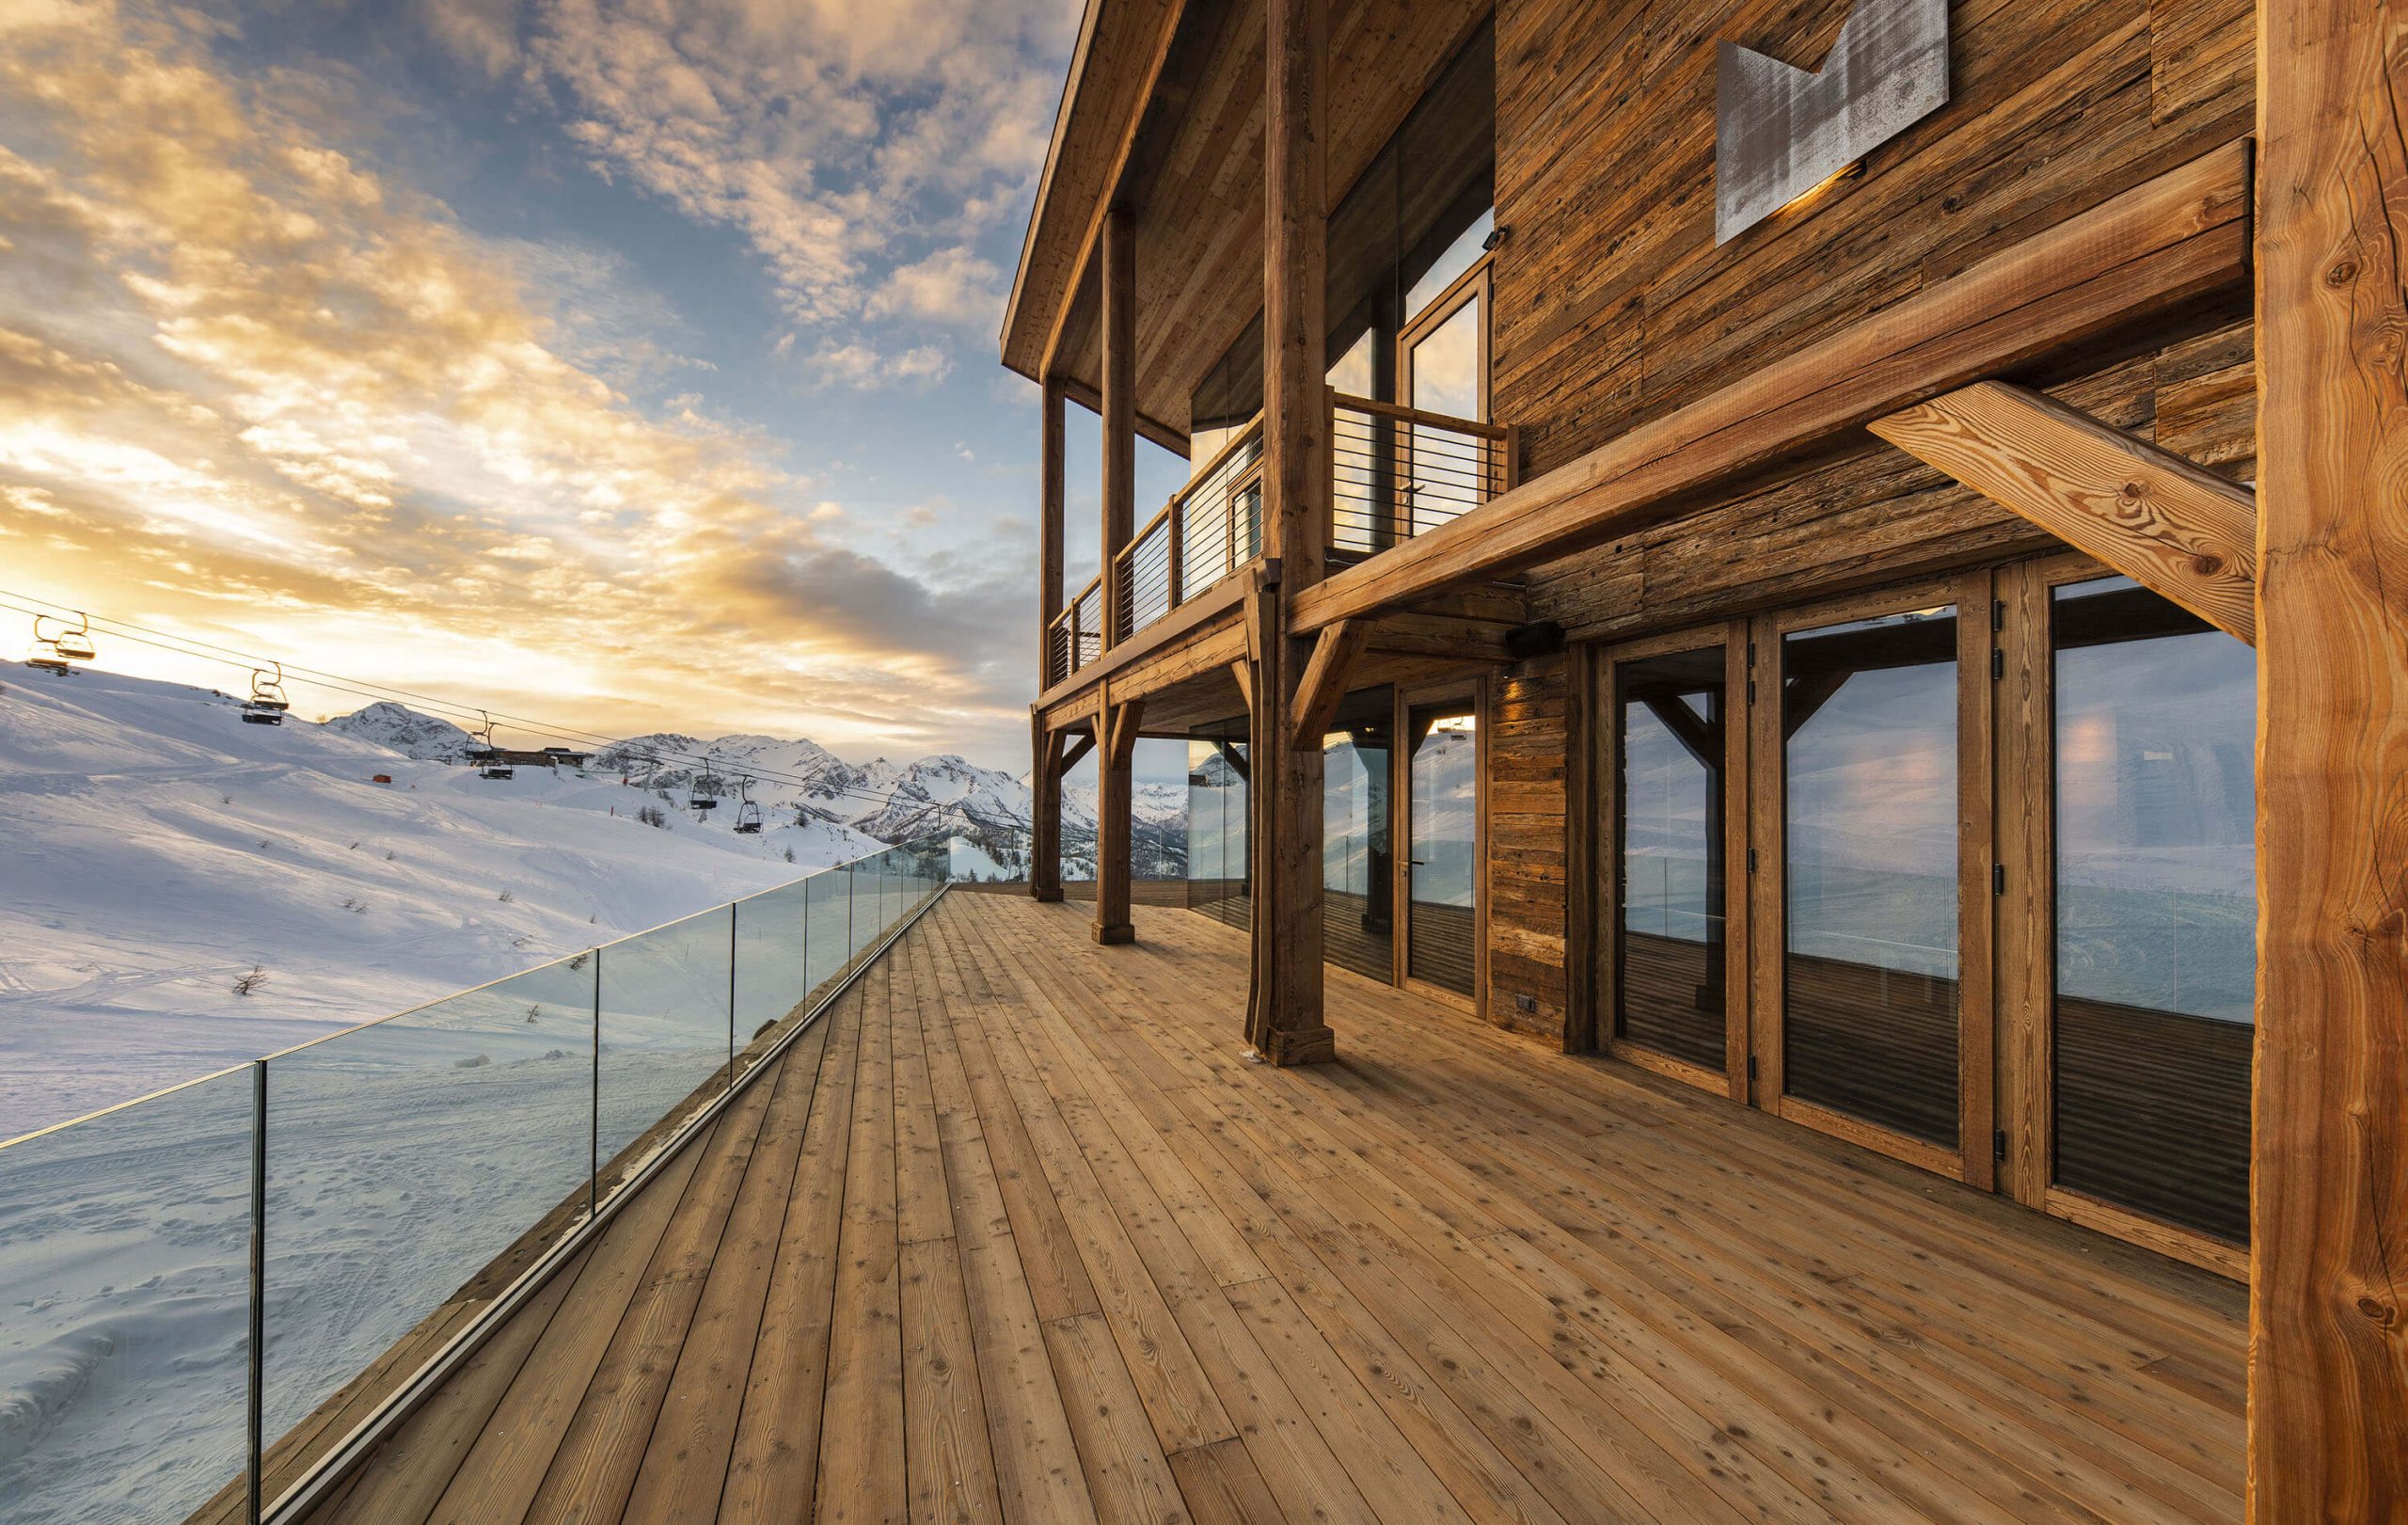 Nuova costruzione rifugio alpino SauzeOulx